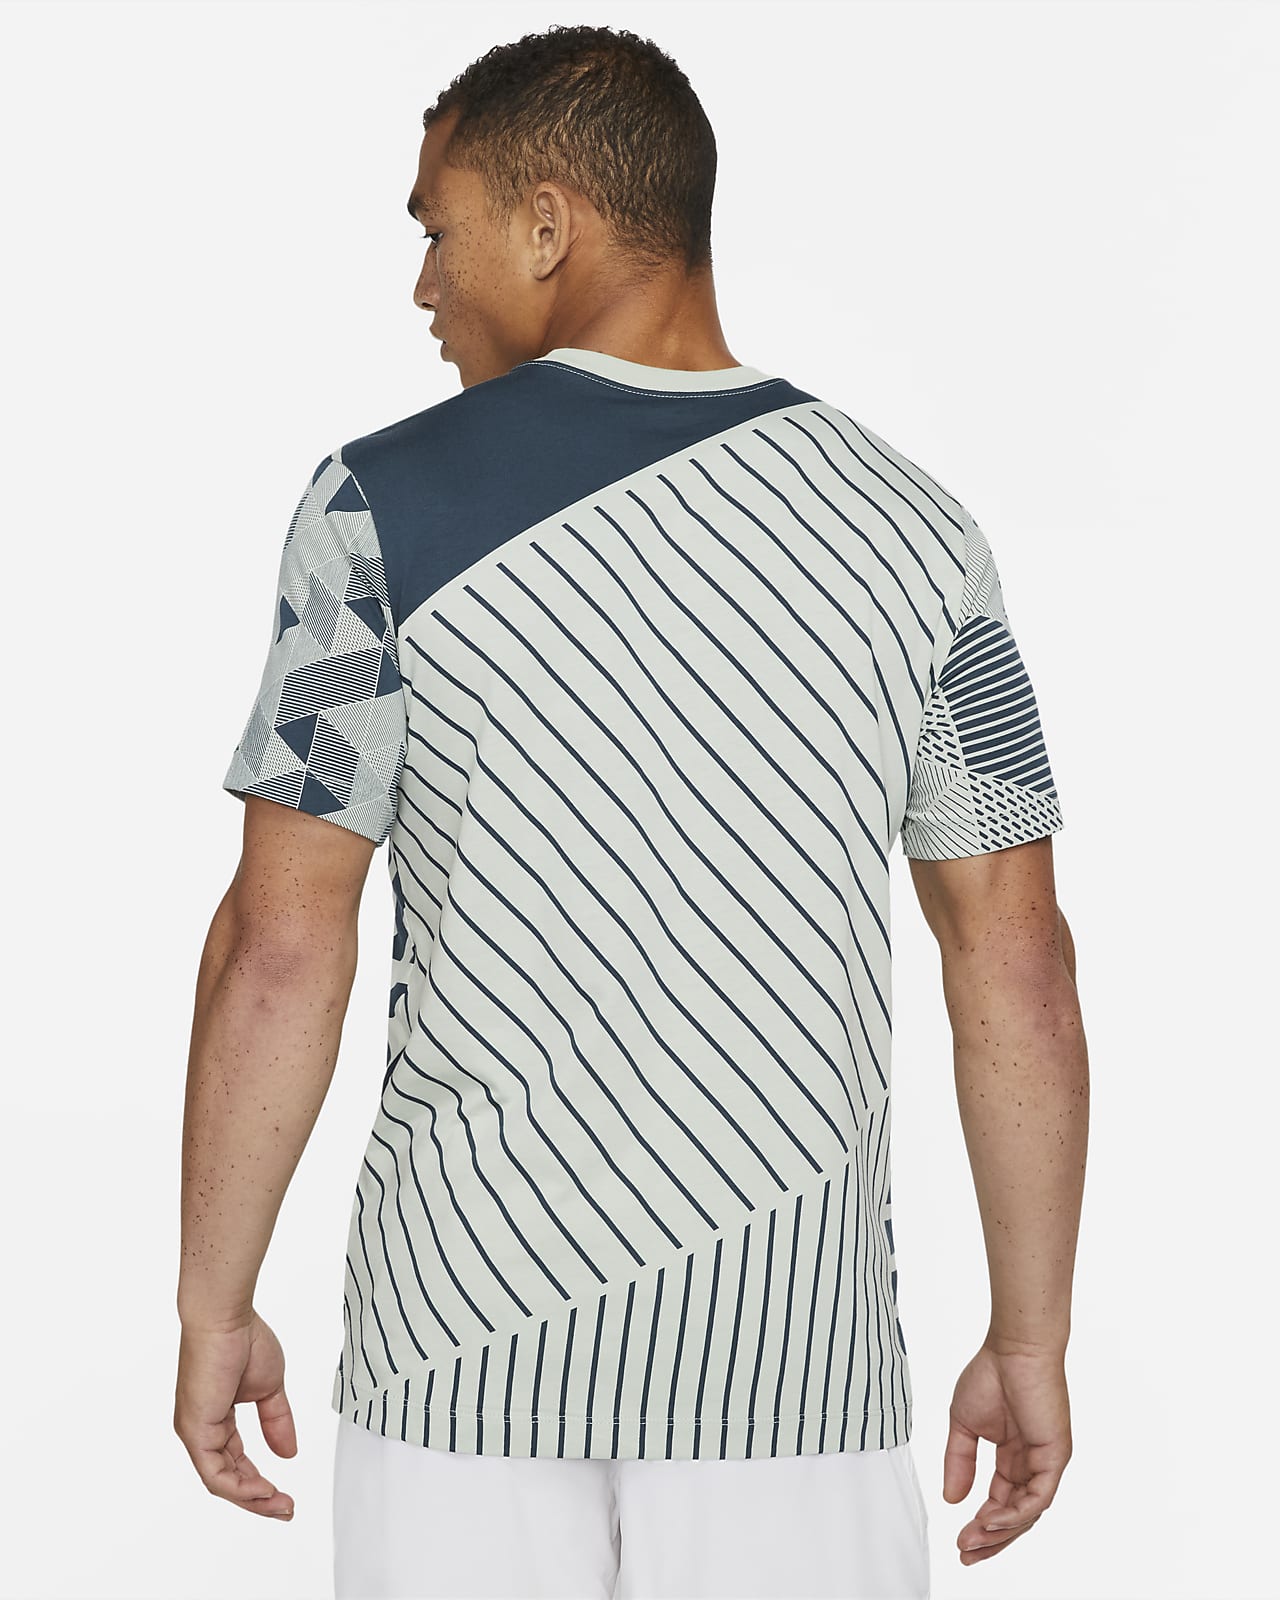 Serena Williams Design Crew Graphic Tennis T-Shirt. Nike AU